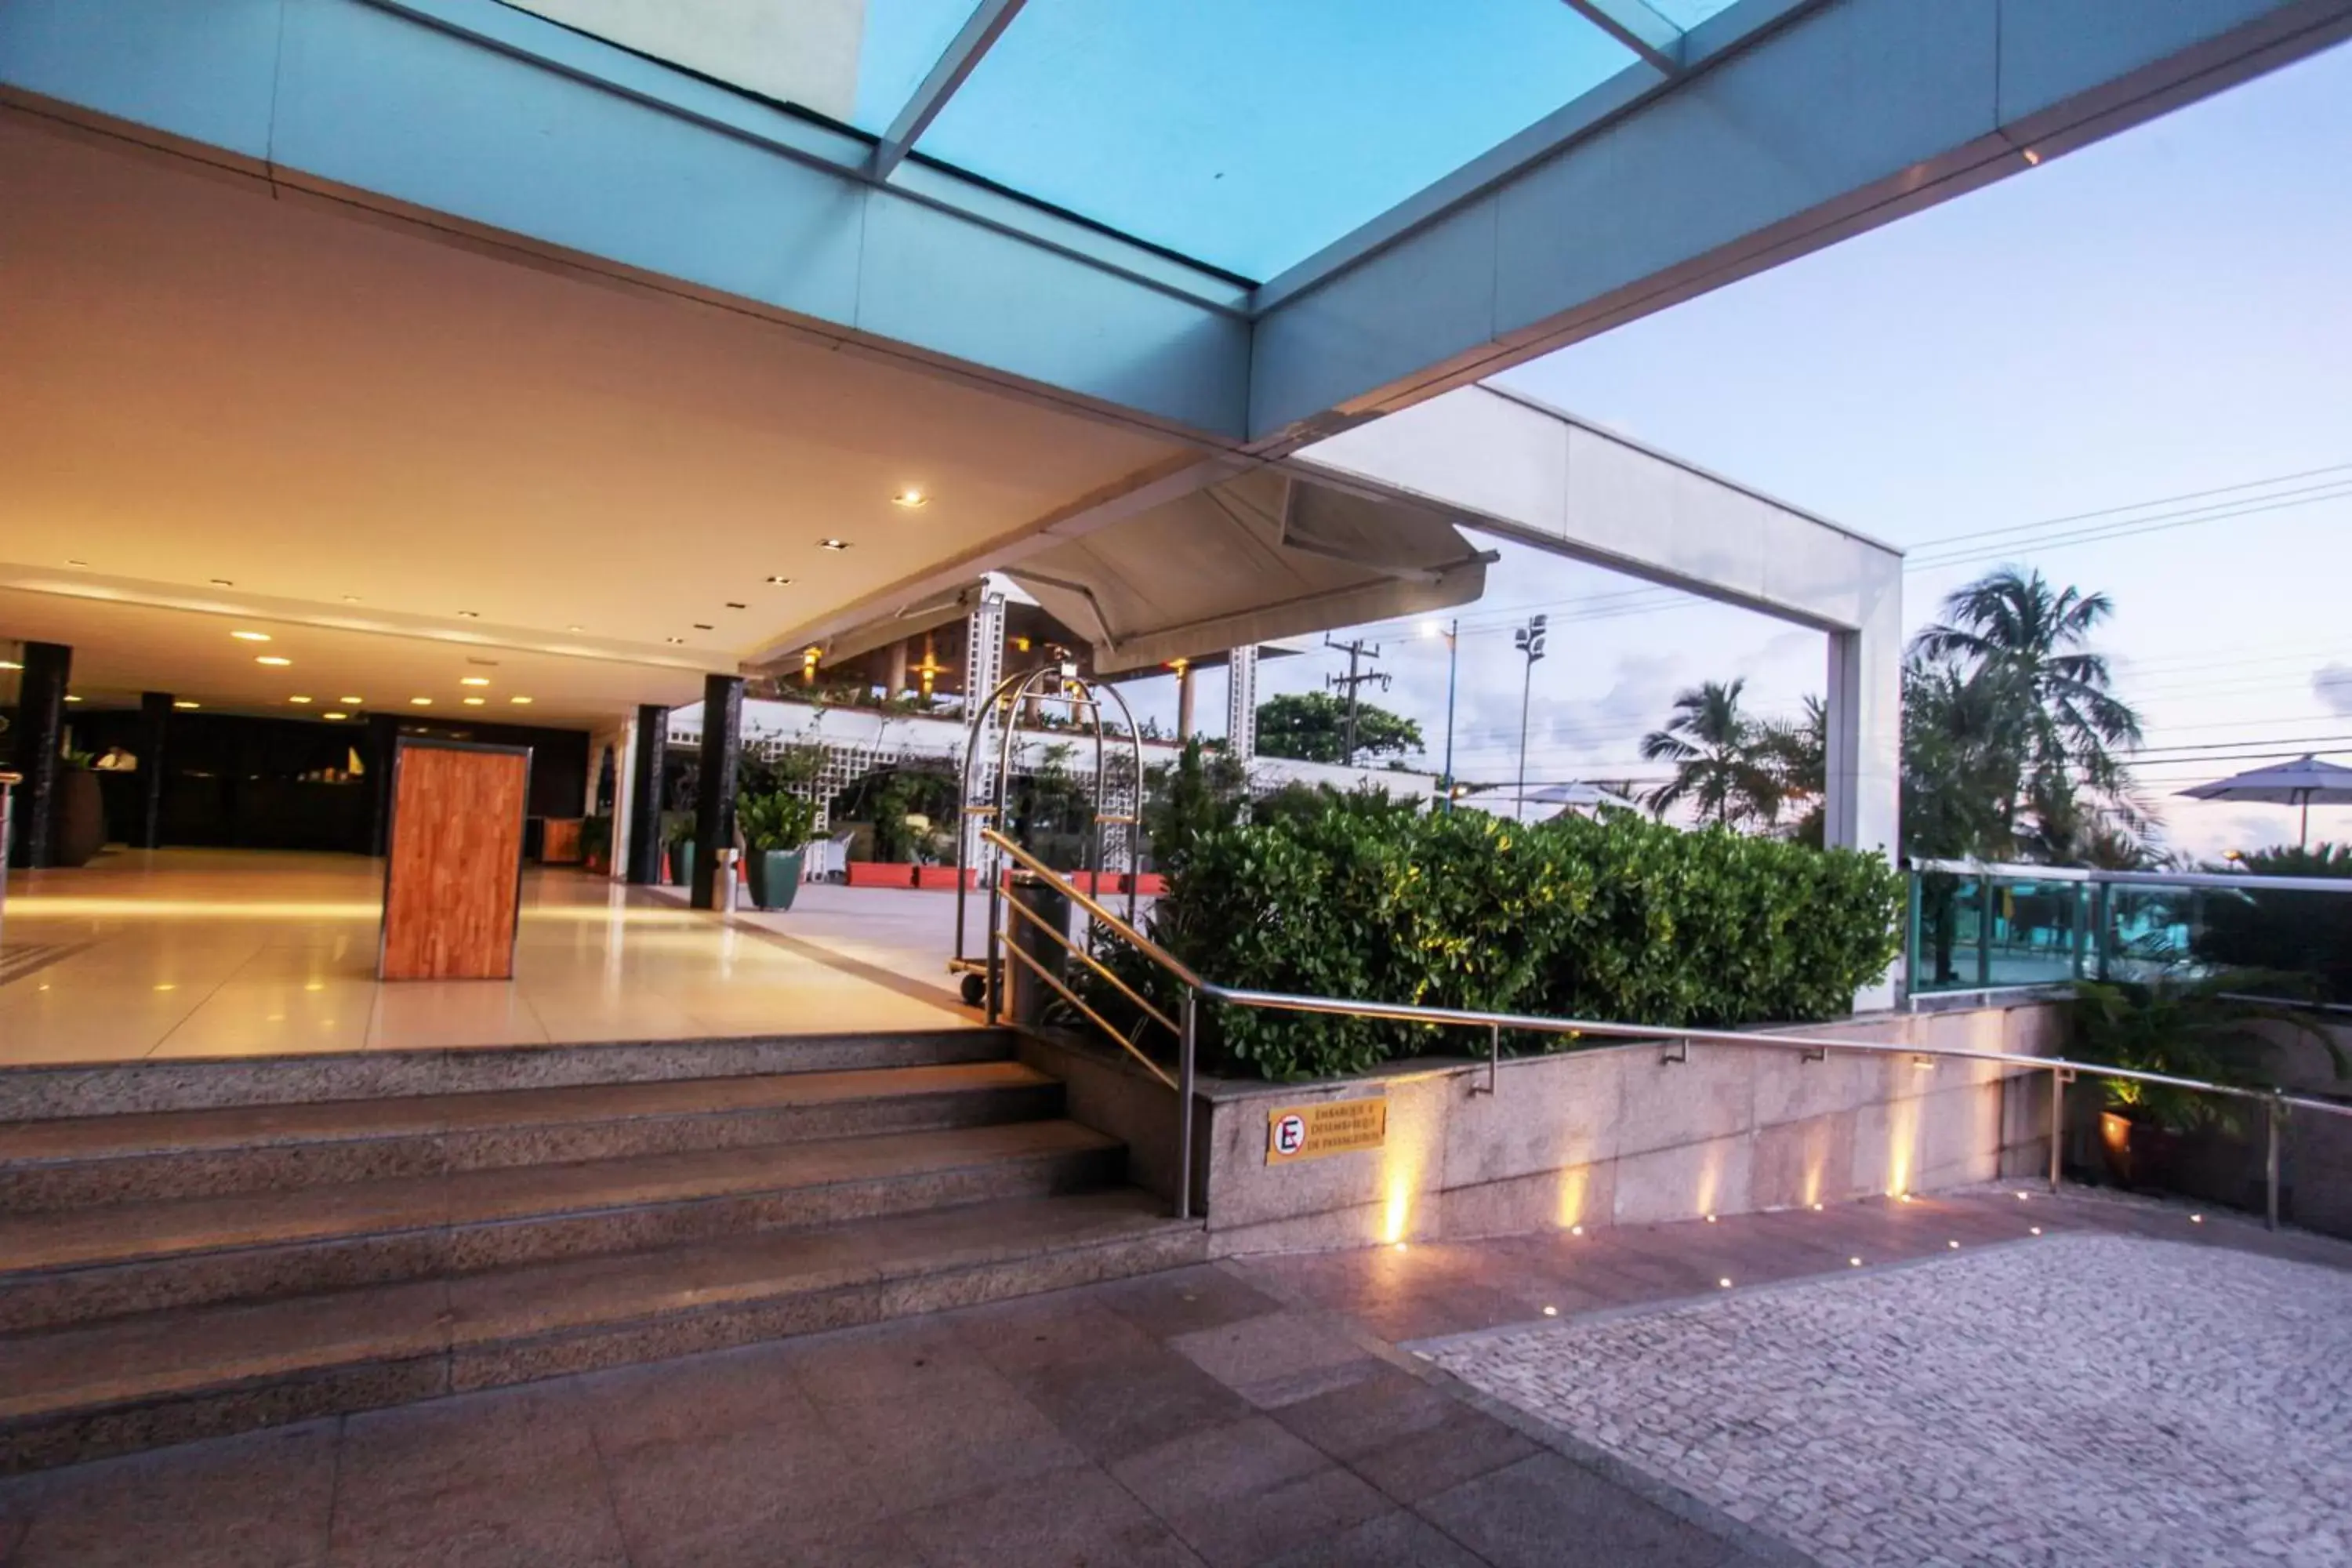 Facade/entrance in Mareiro Hotel